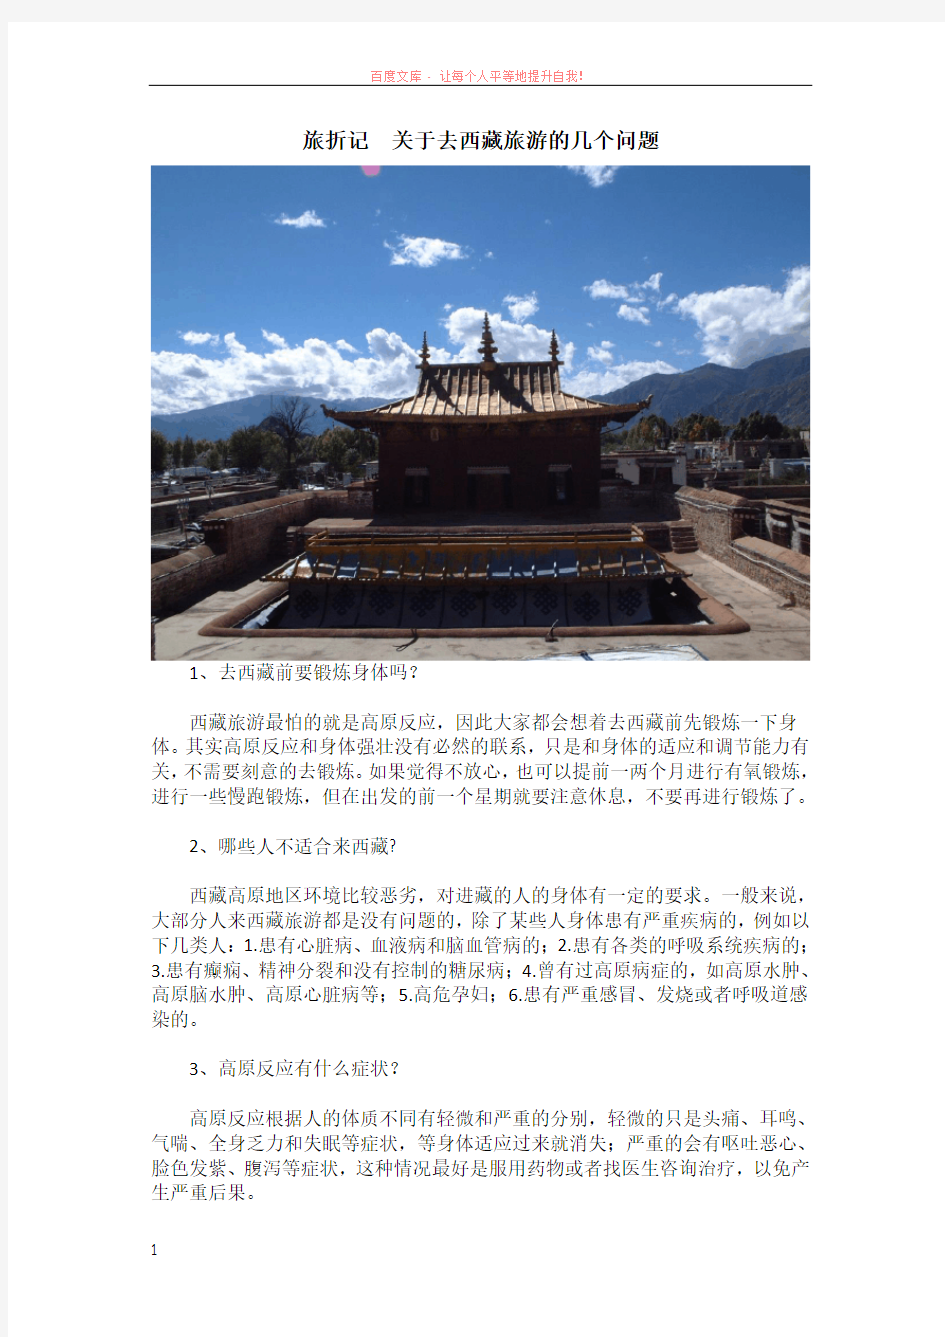 旅折记关于去西藏旅游的几个问题